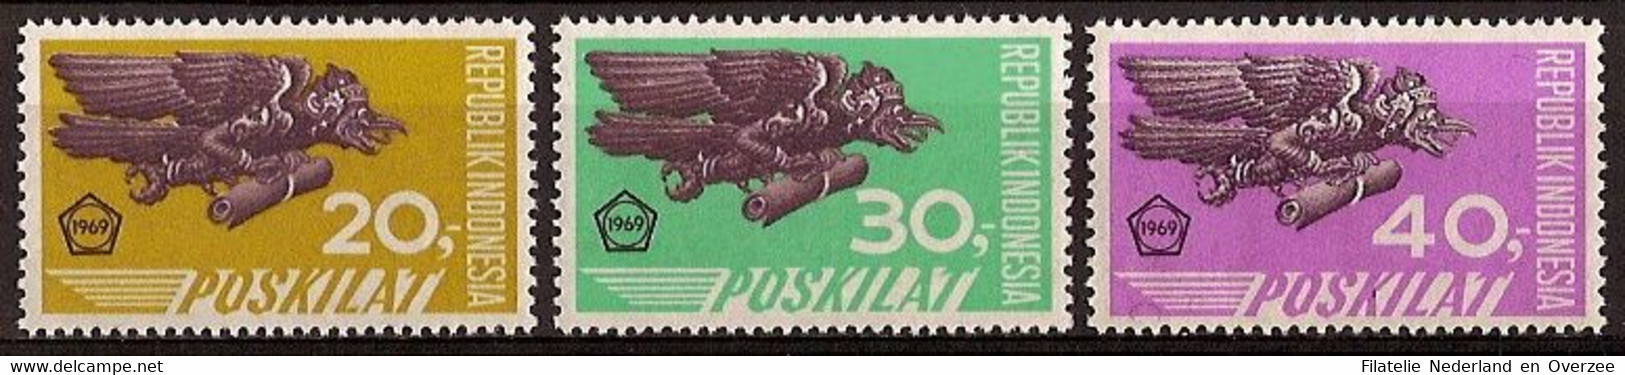 Indonesië / Indonesia 1969 Nr 663/665 Postfris/MNH Expresse Zegels - Indonesië